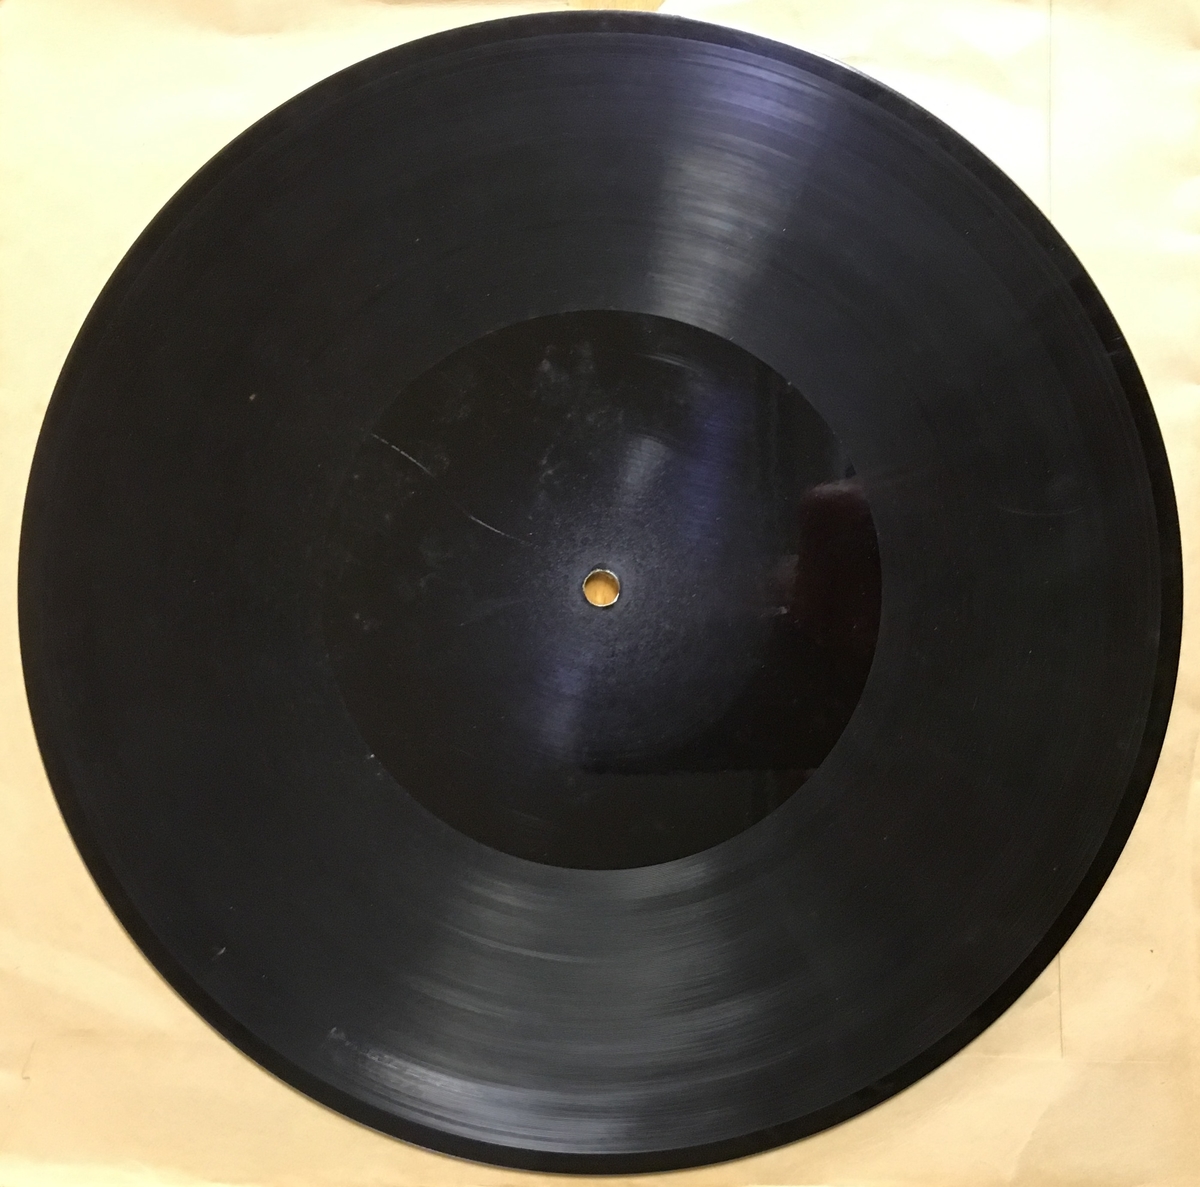 Grammofonplate i svart skjellakk og plateomslag i papir.